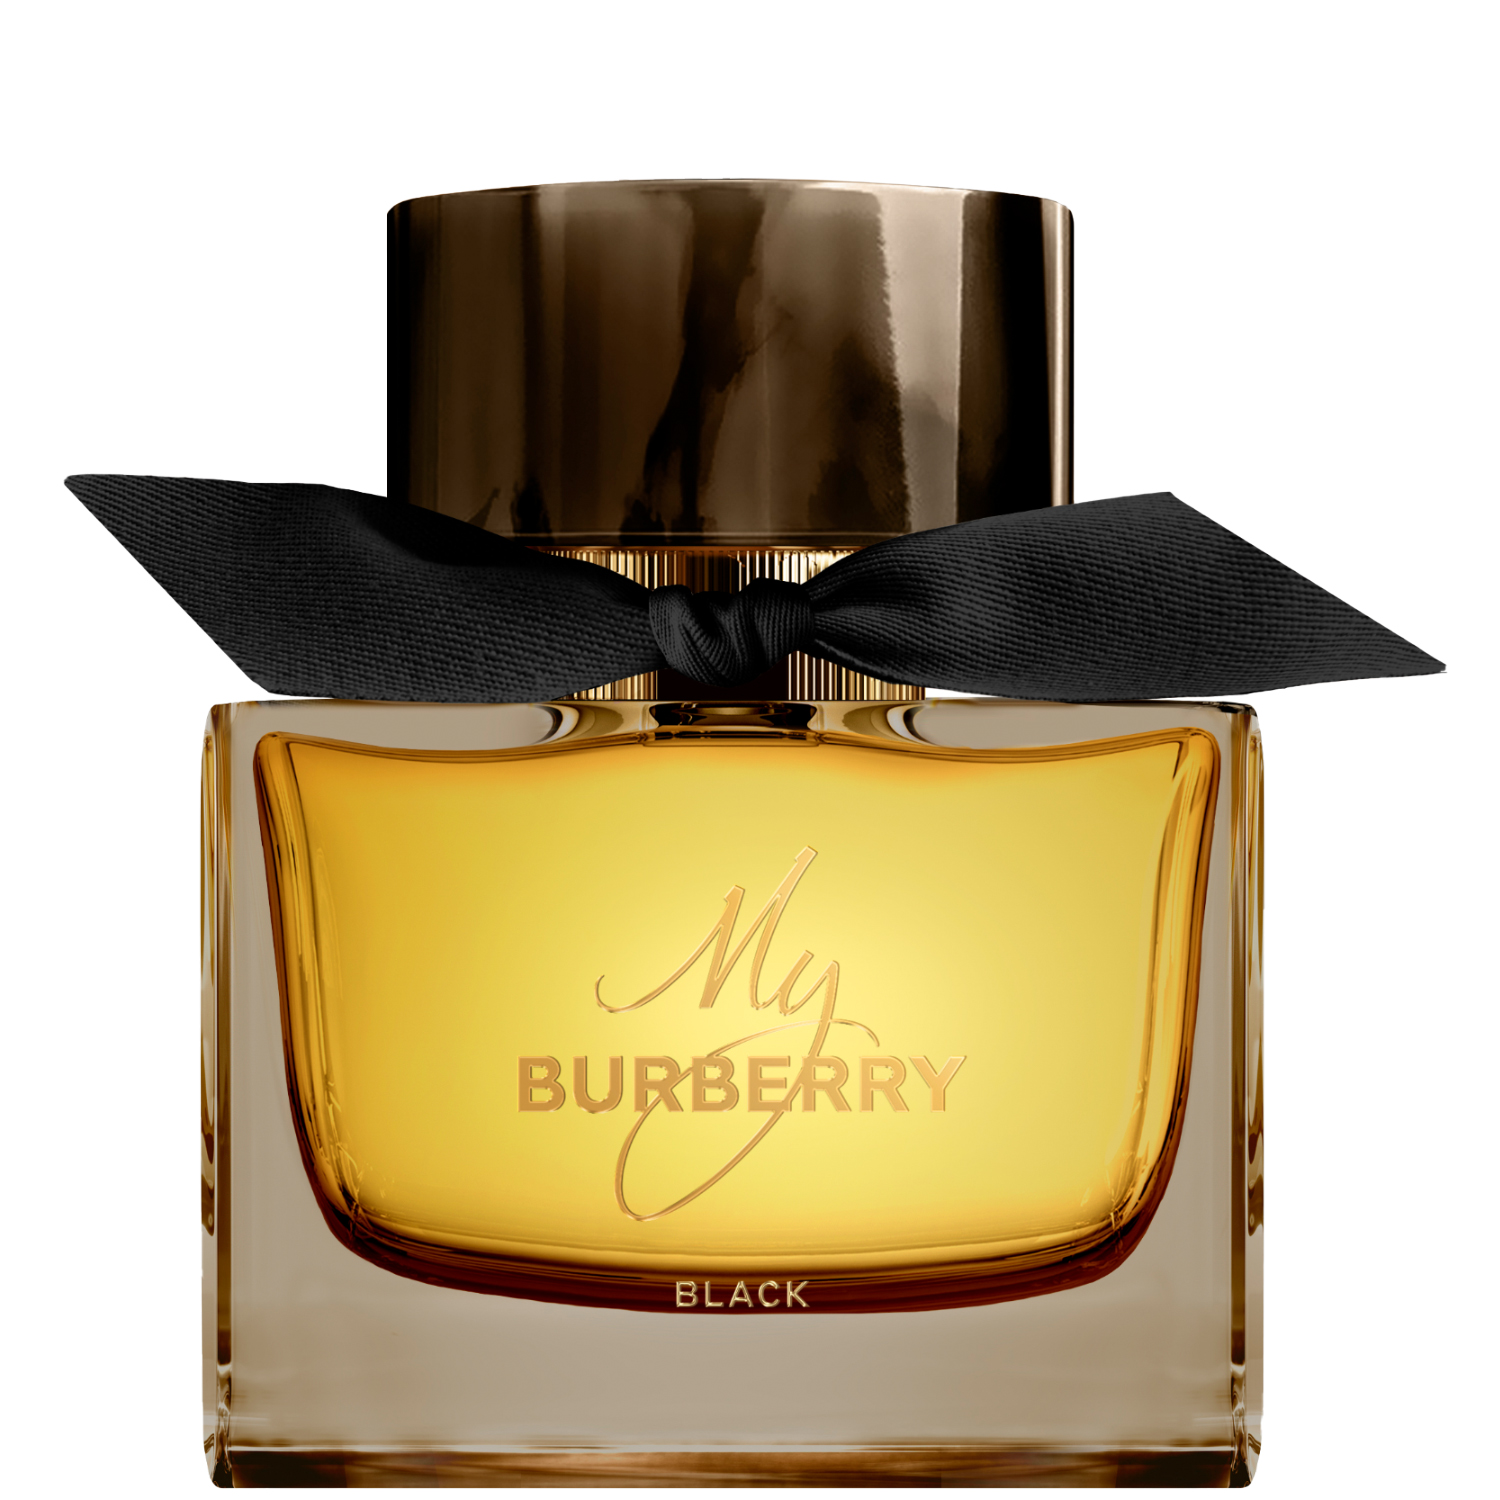 Burberry My Burberry Black Eau de Parfum 90ml